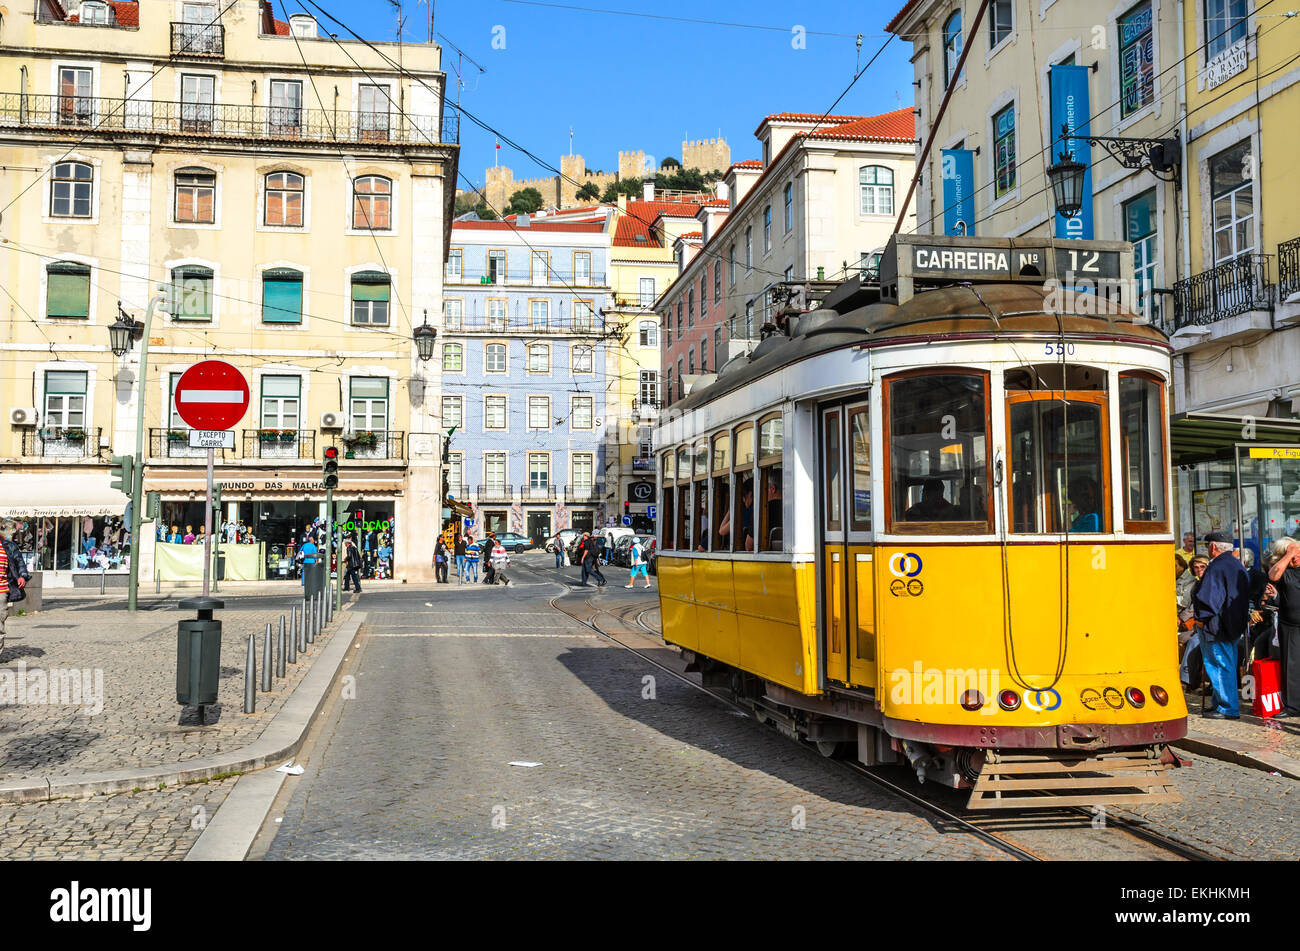 Tranvías tradicionales sobre calle medieval de Alfama, el antiguo distrito de Lisboa, Portugal. Foto de stock